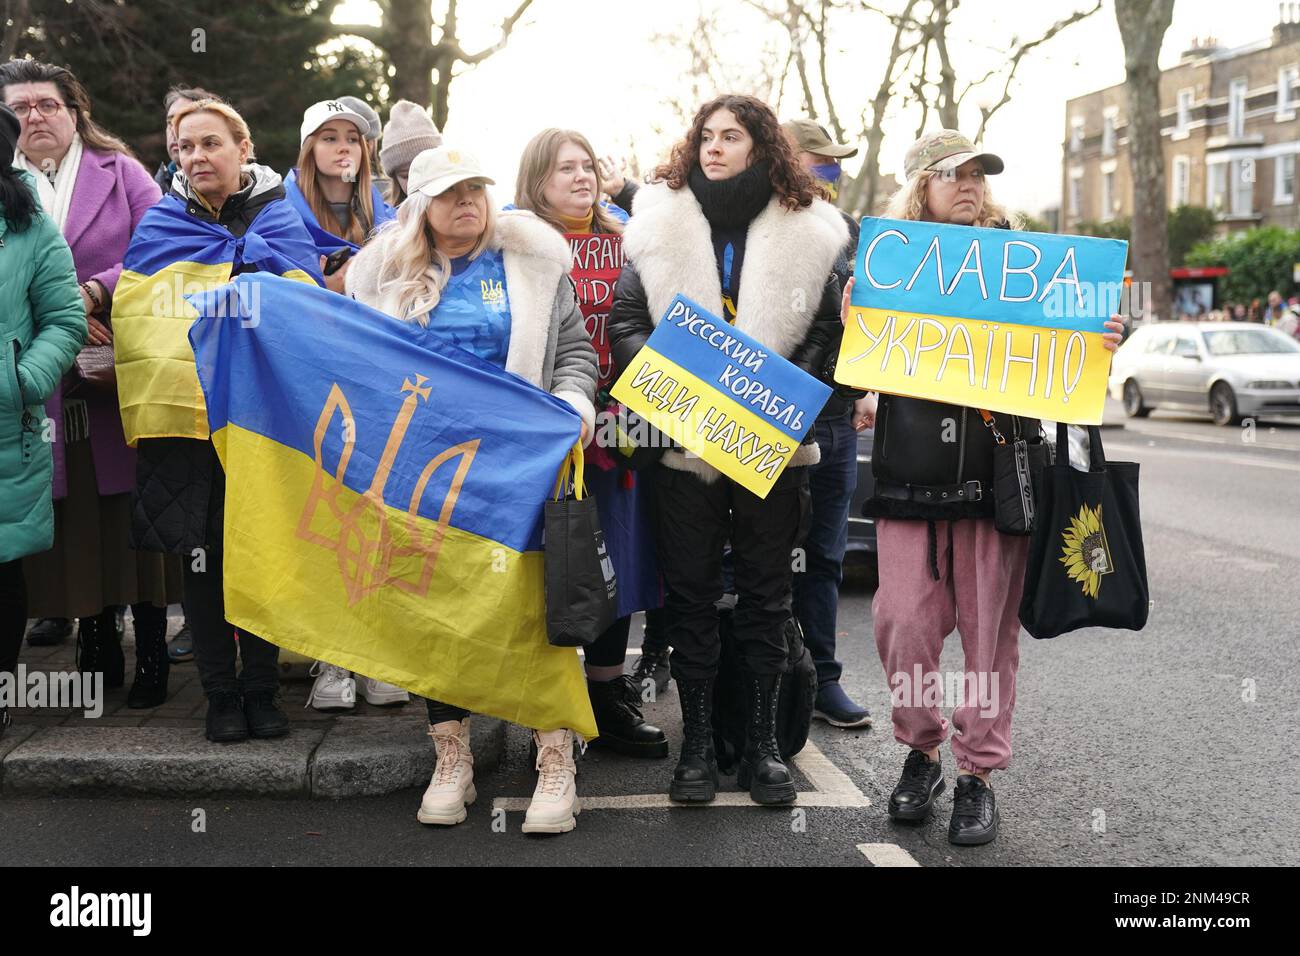 Le persone si riuniscono accanto al St. Statua di Volodymyr in Holland Park, Londra, in occasione del primo anniversario dell'invasione russa dell'Ucraina. Data immagine: Venerdì 24 febbraio 2023. Foto Stock